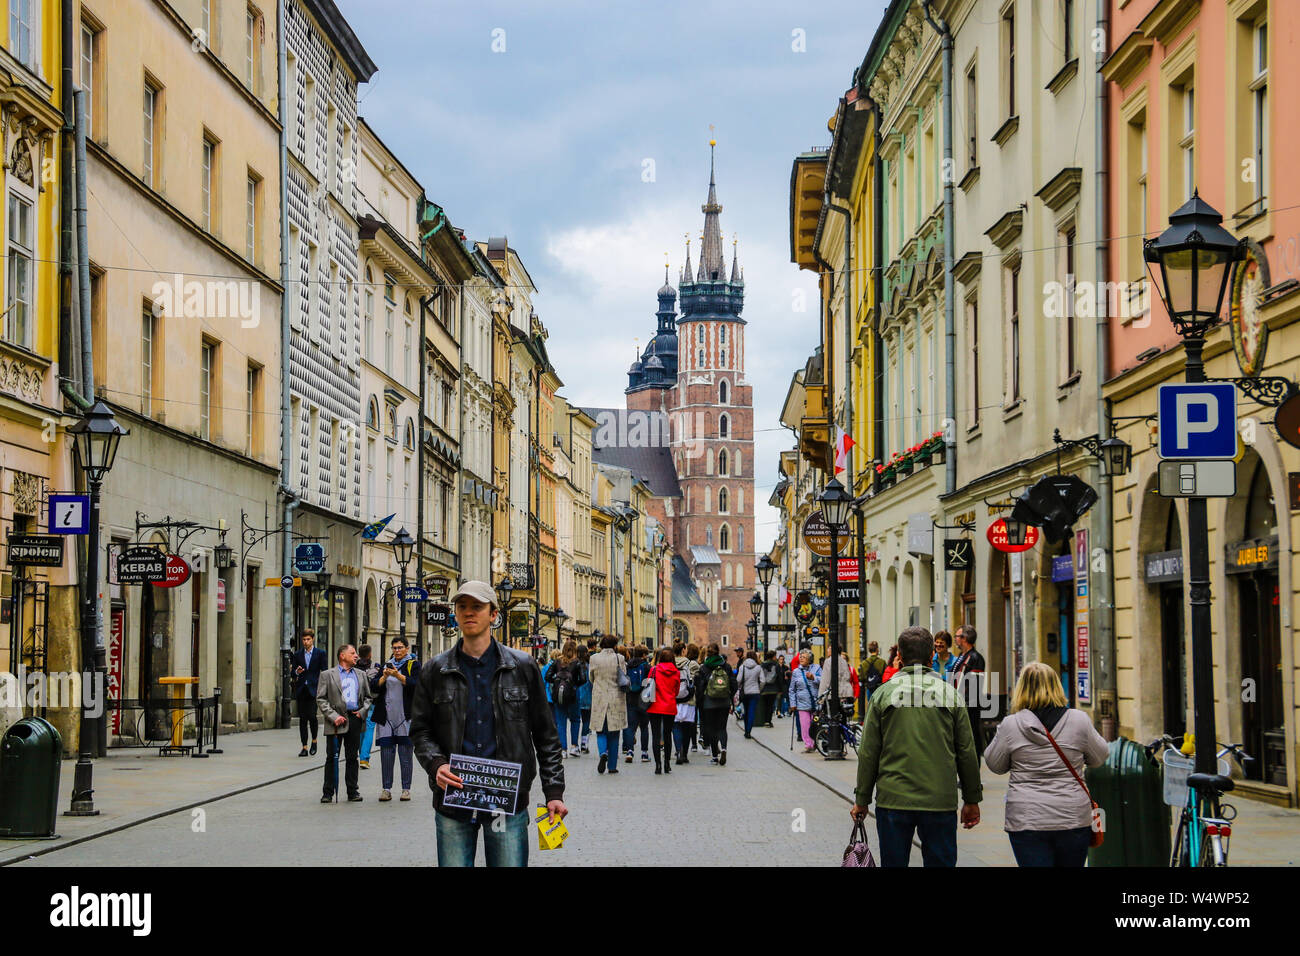 Cracovia, Polonia - Mayo 21, 2019: Los turistas caminando por la ciudad vieja de Cracovia. Foto de stock